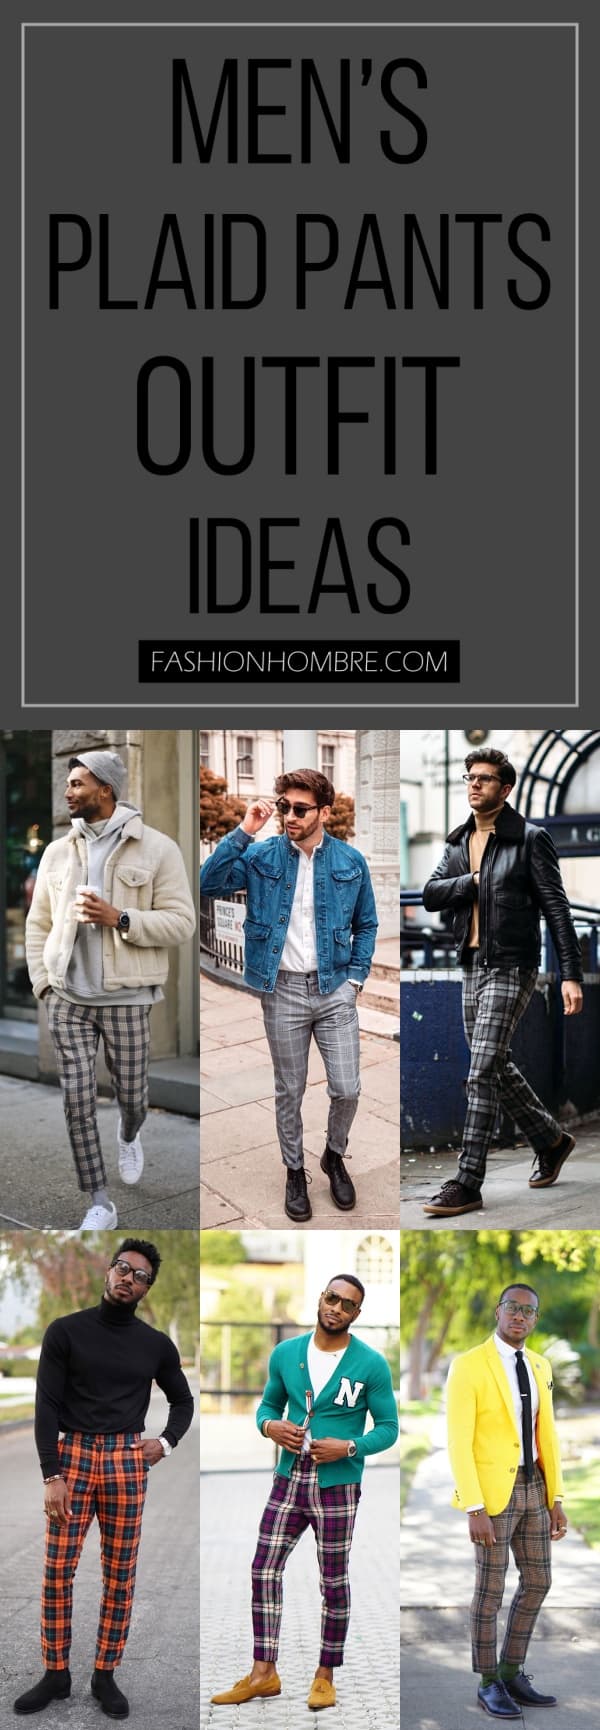 men’s plaid pants outfit ideas